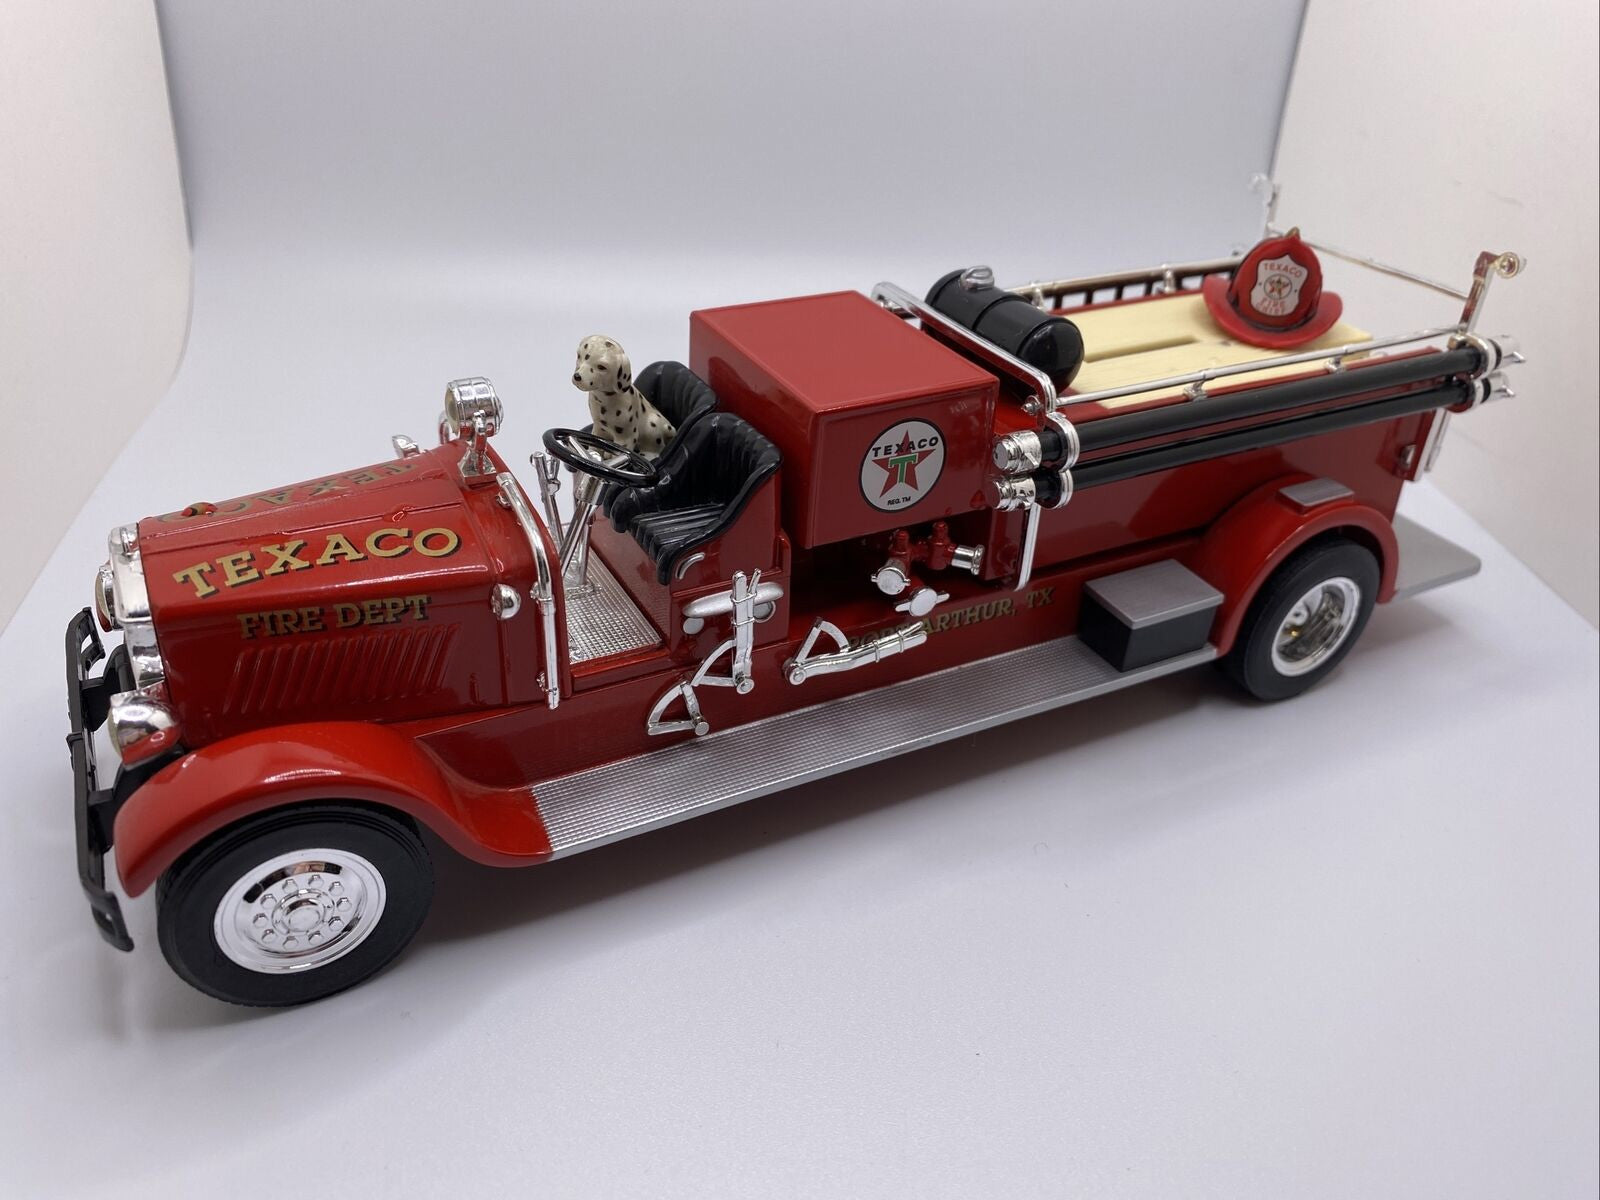 Ertl F415 1/30 Scale Texaco #15 1998 - 1929 Mack Fire Engine